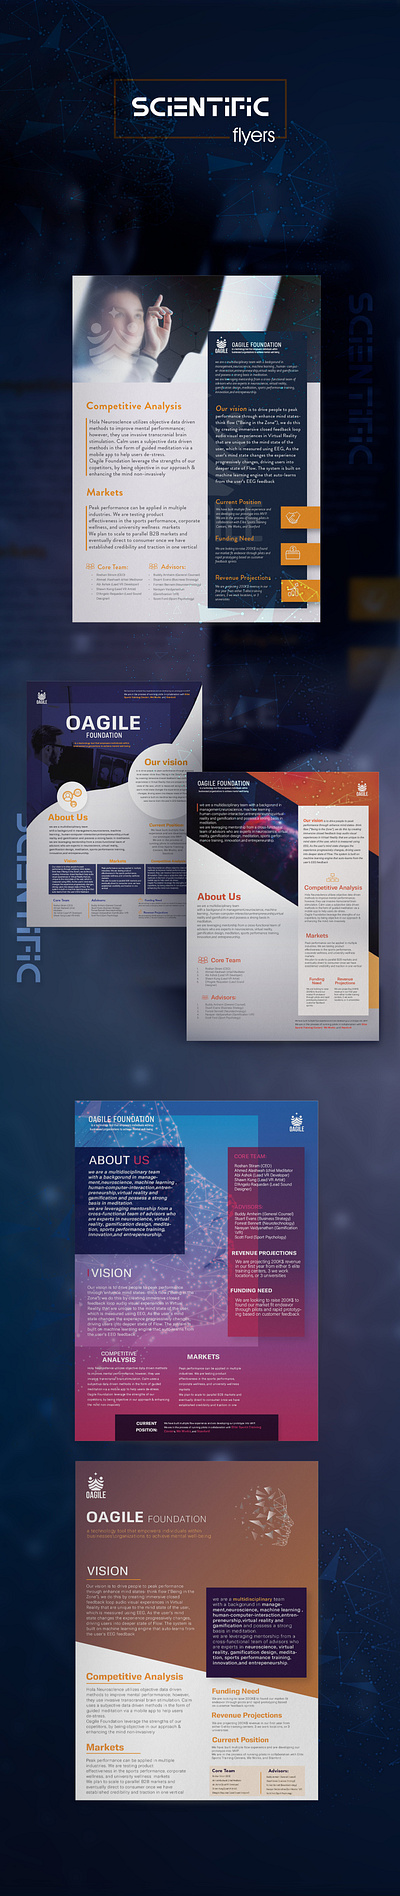 printable scientific flyer